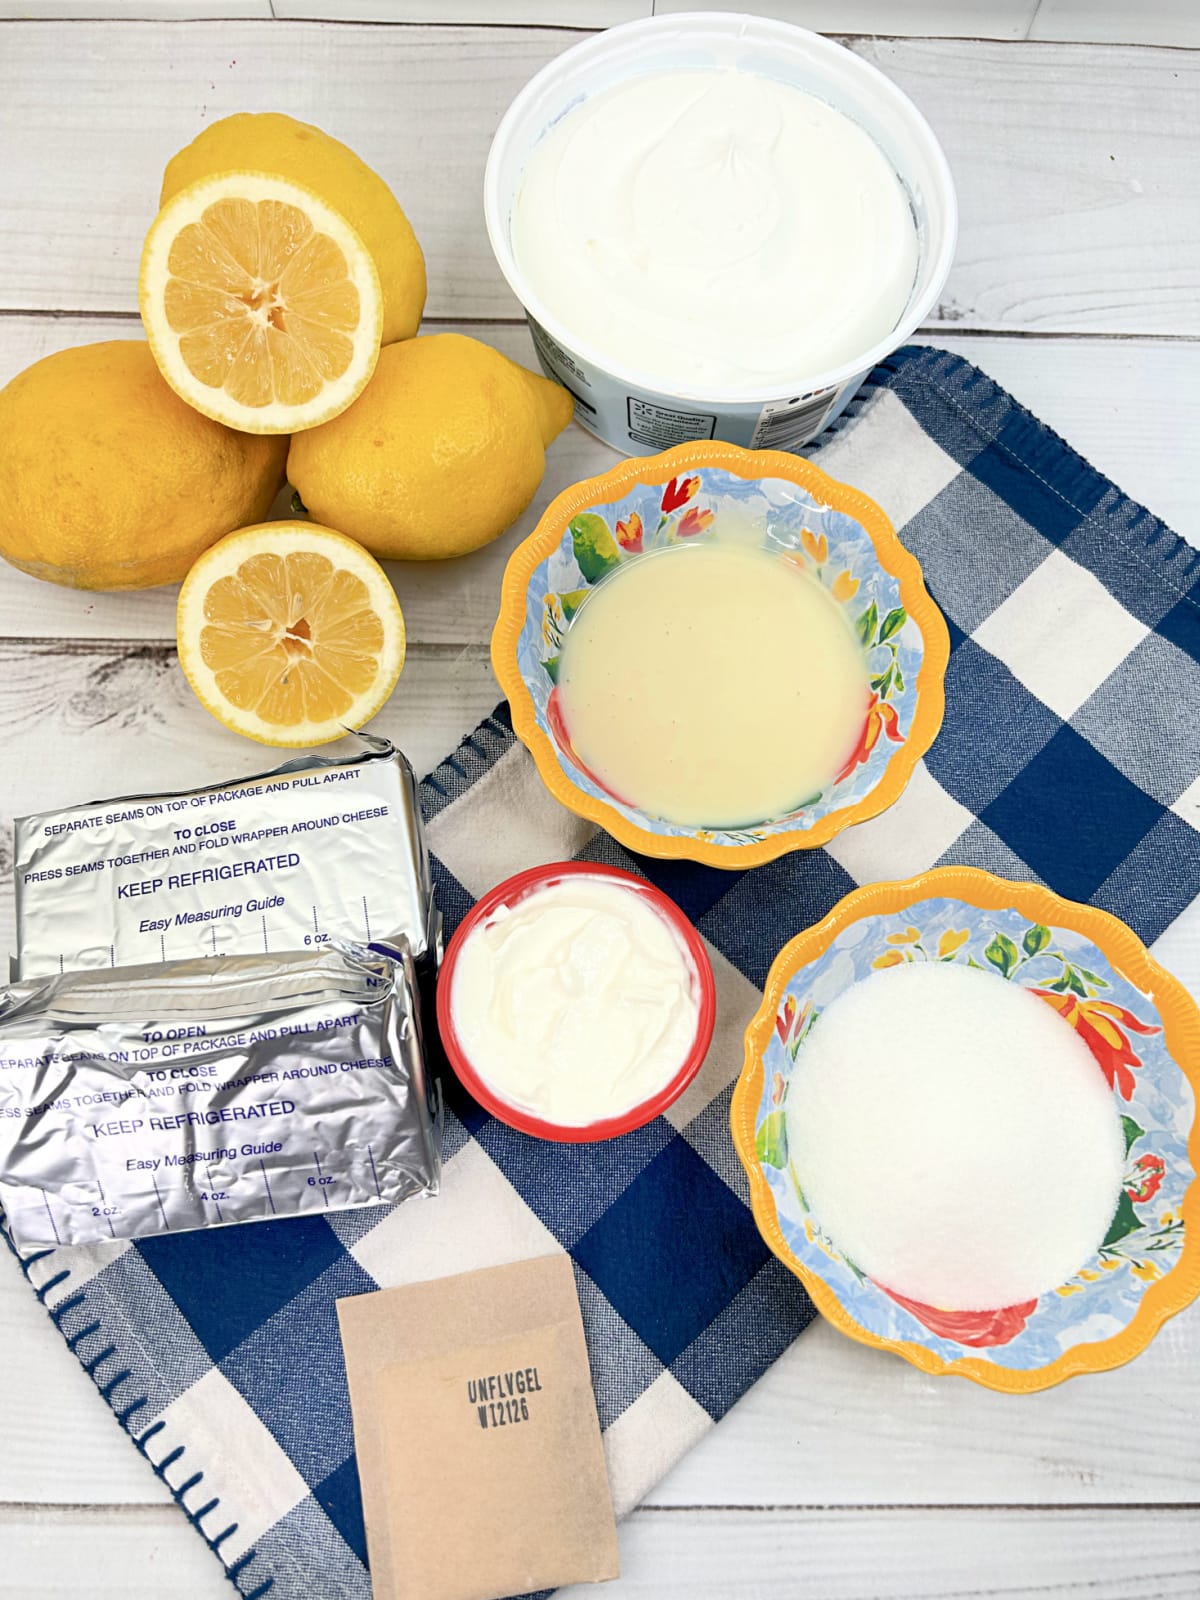 lemon cheesecake ingredients